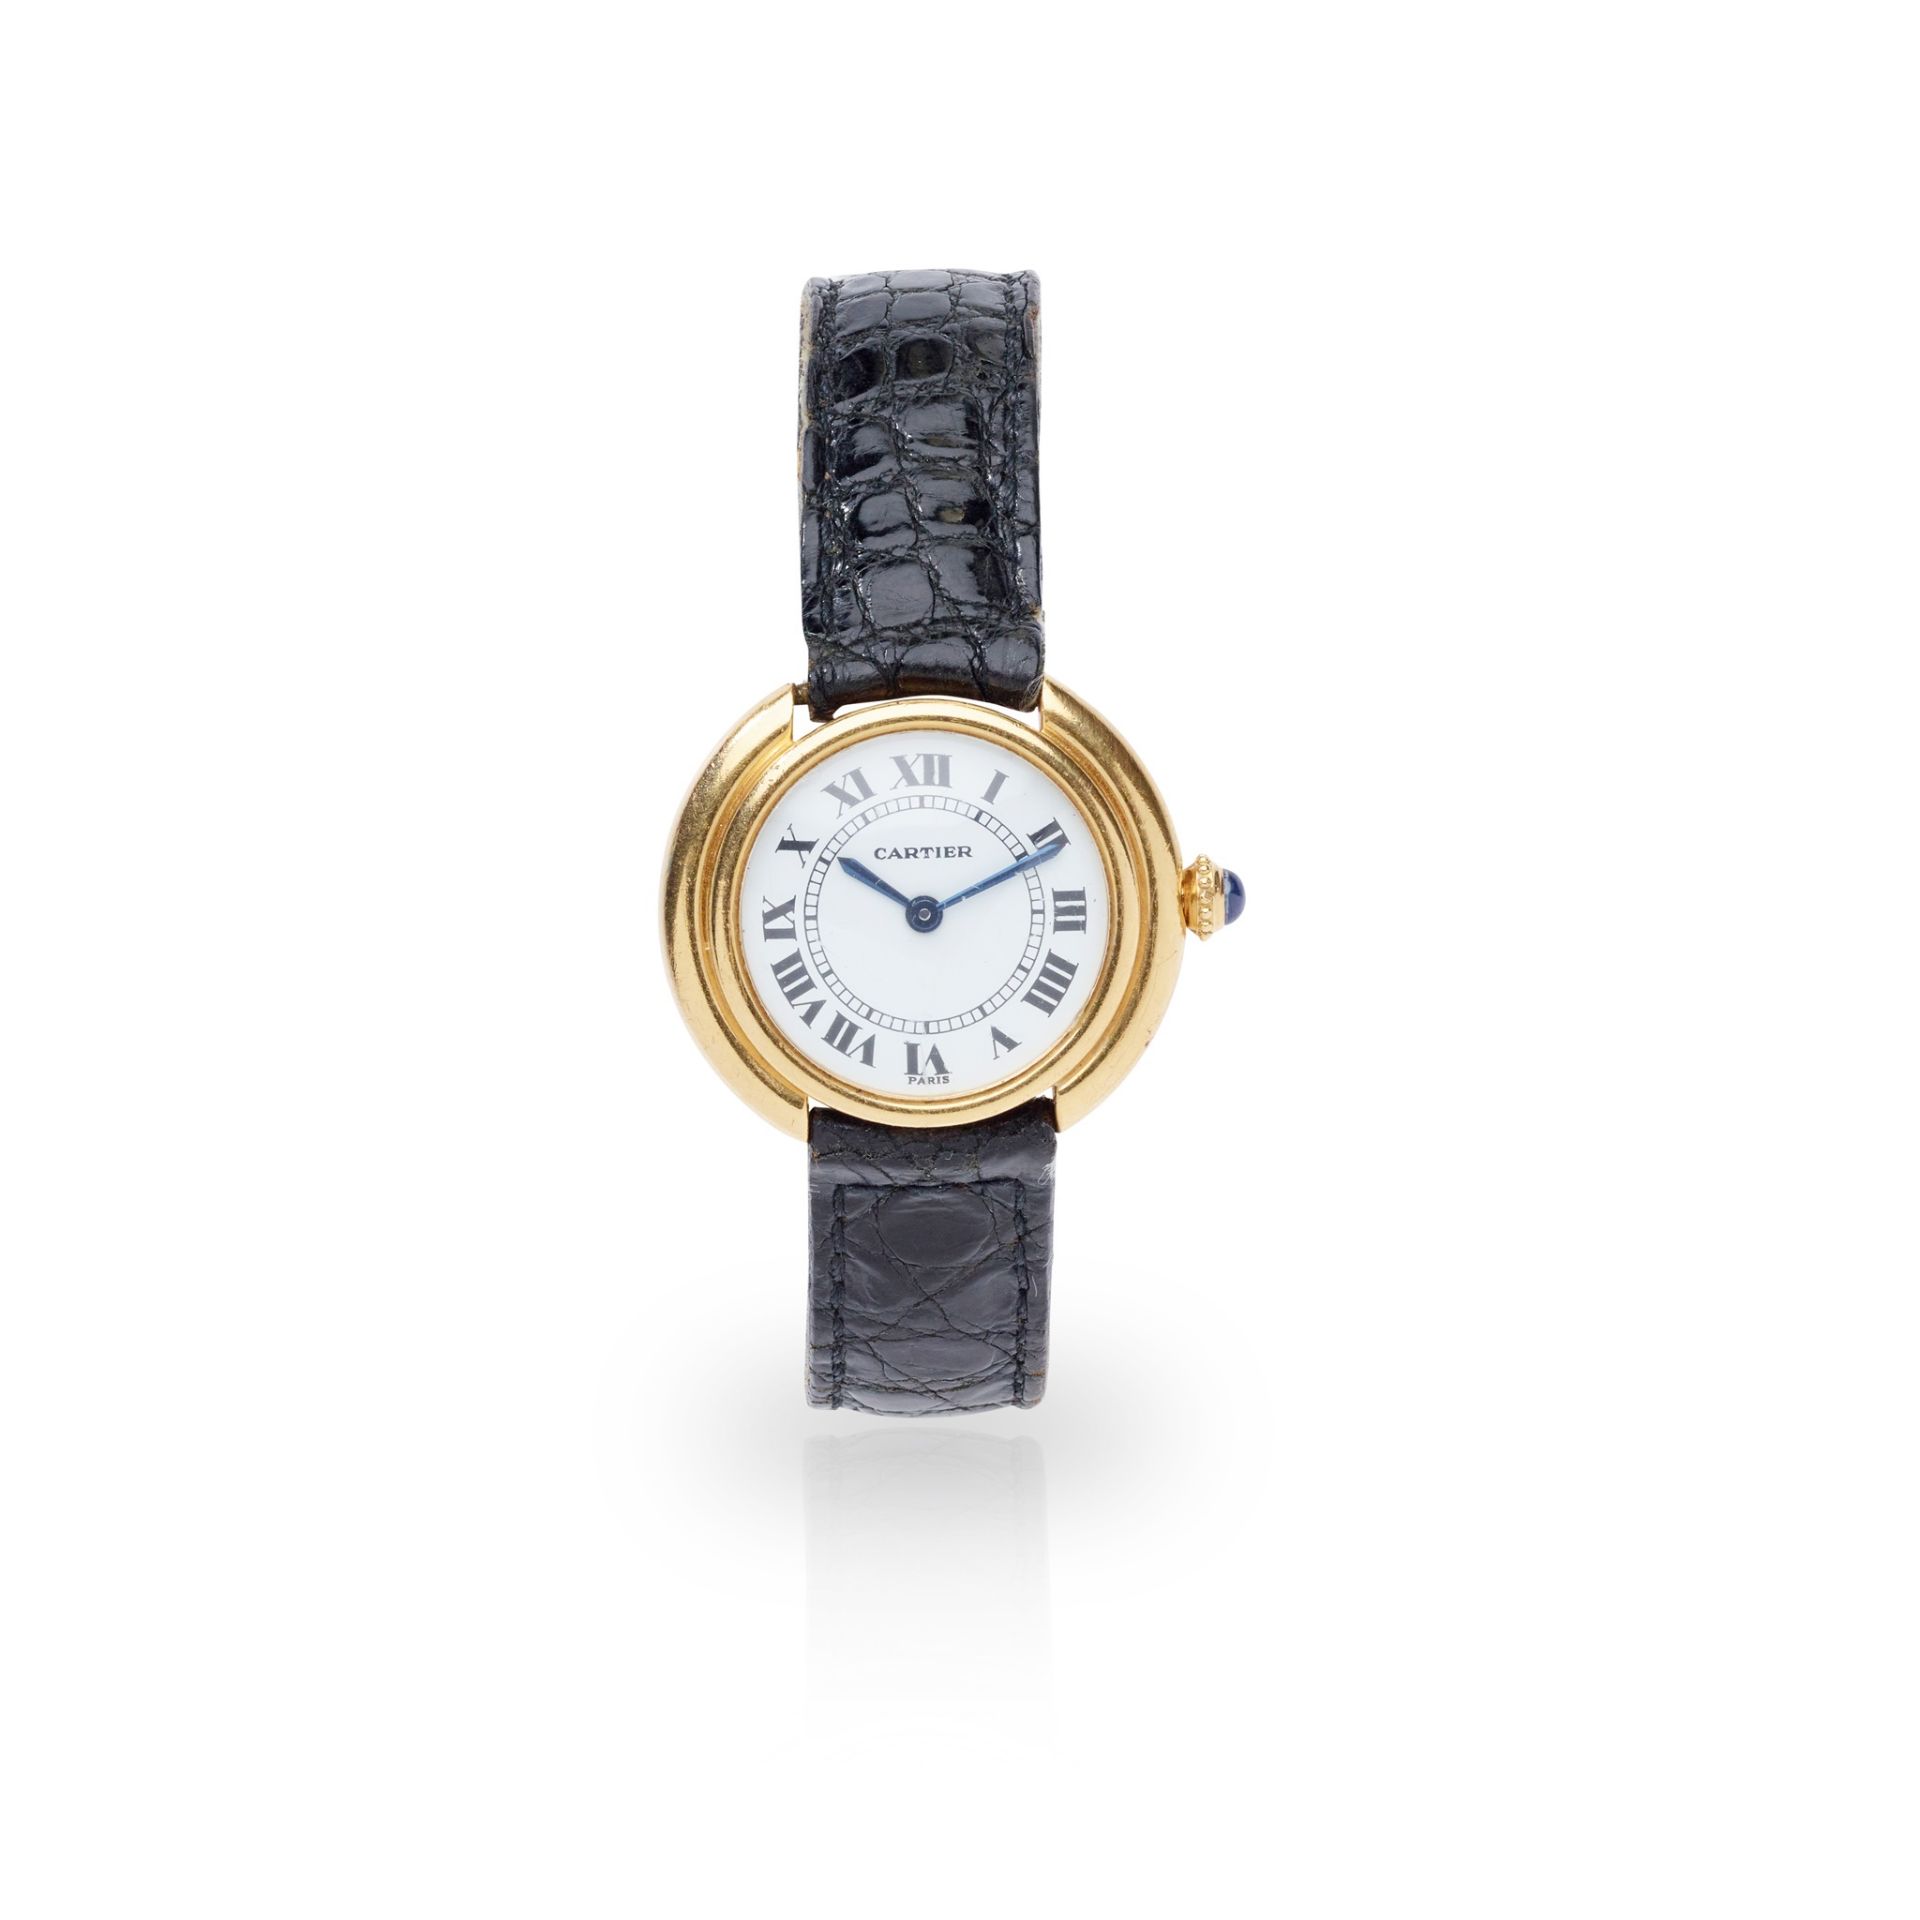 Y Cartier: an oval-cased wrist watch